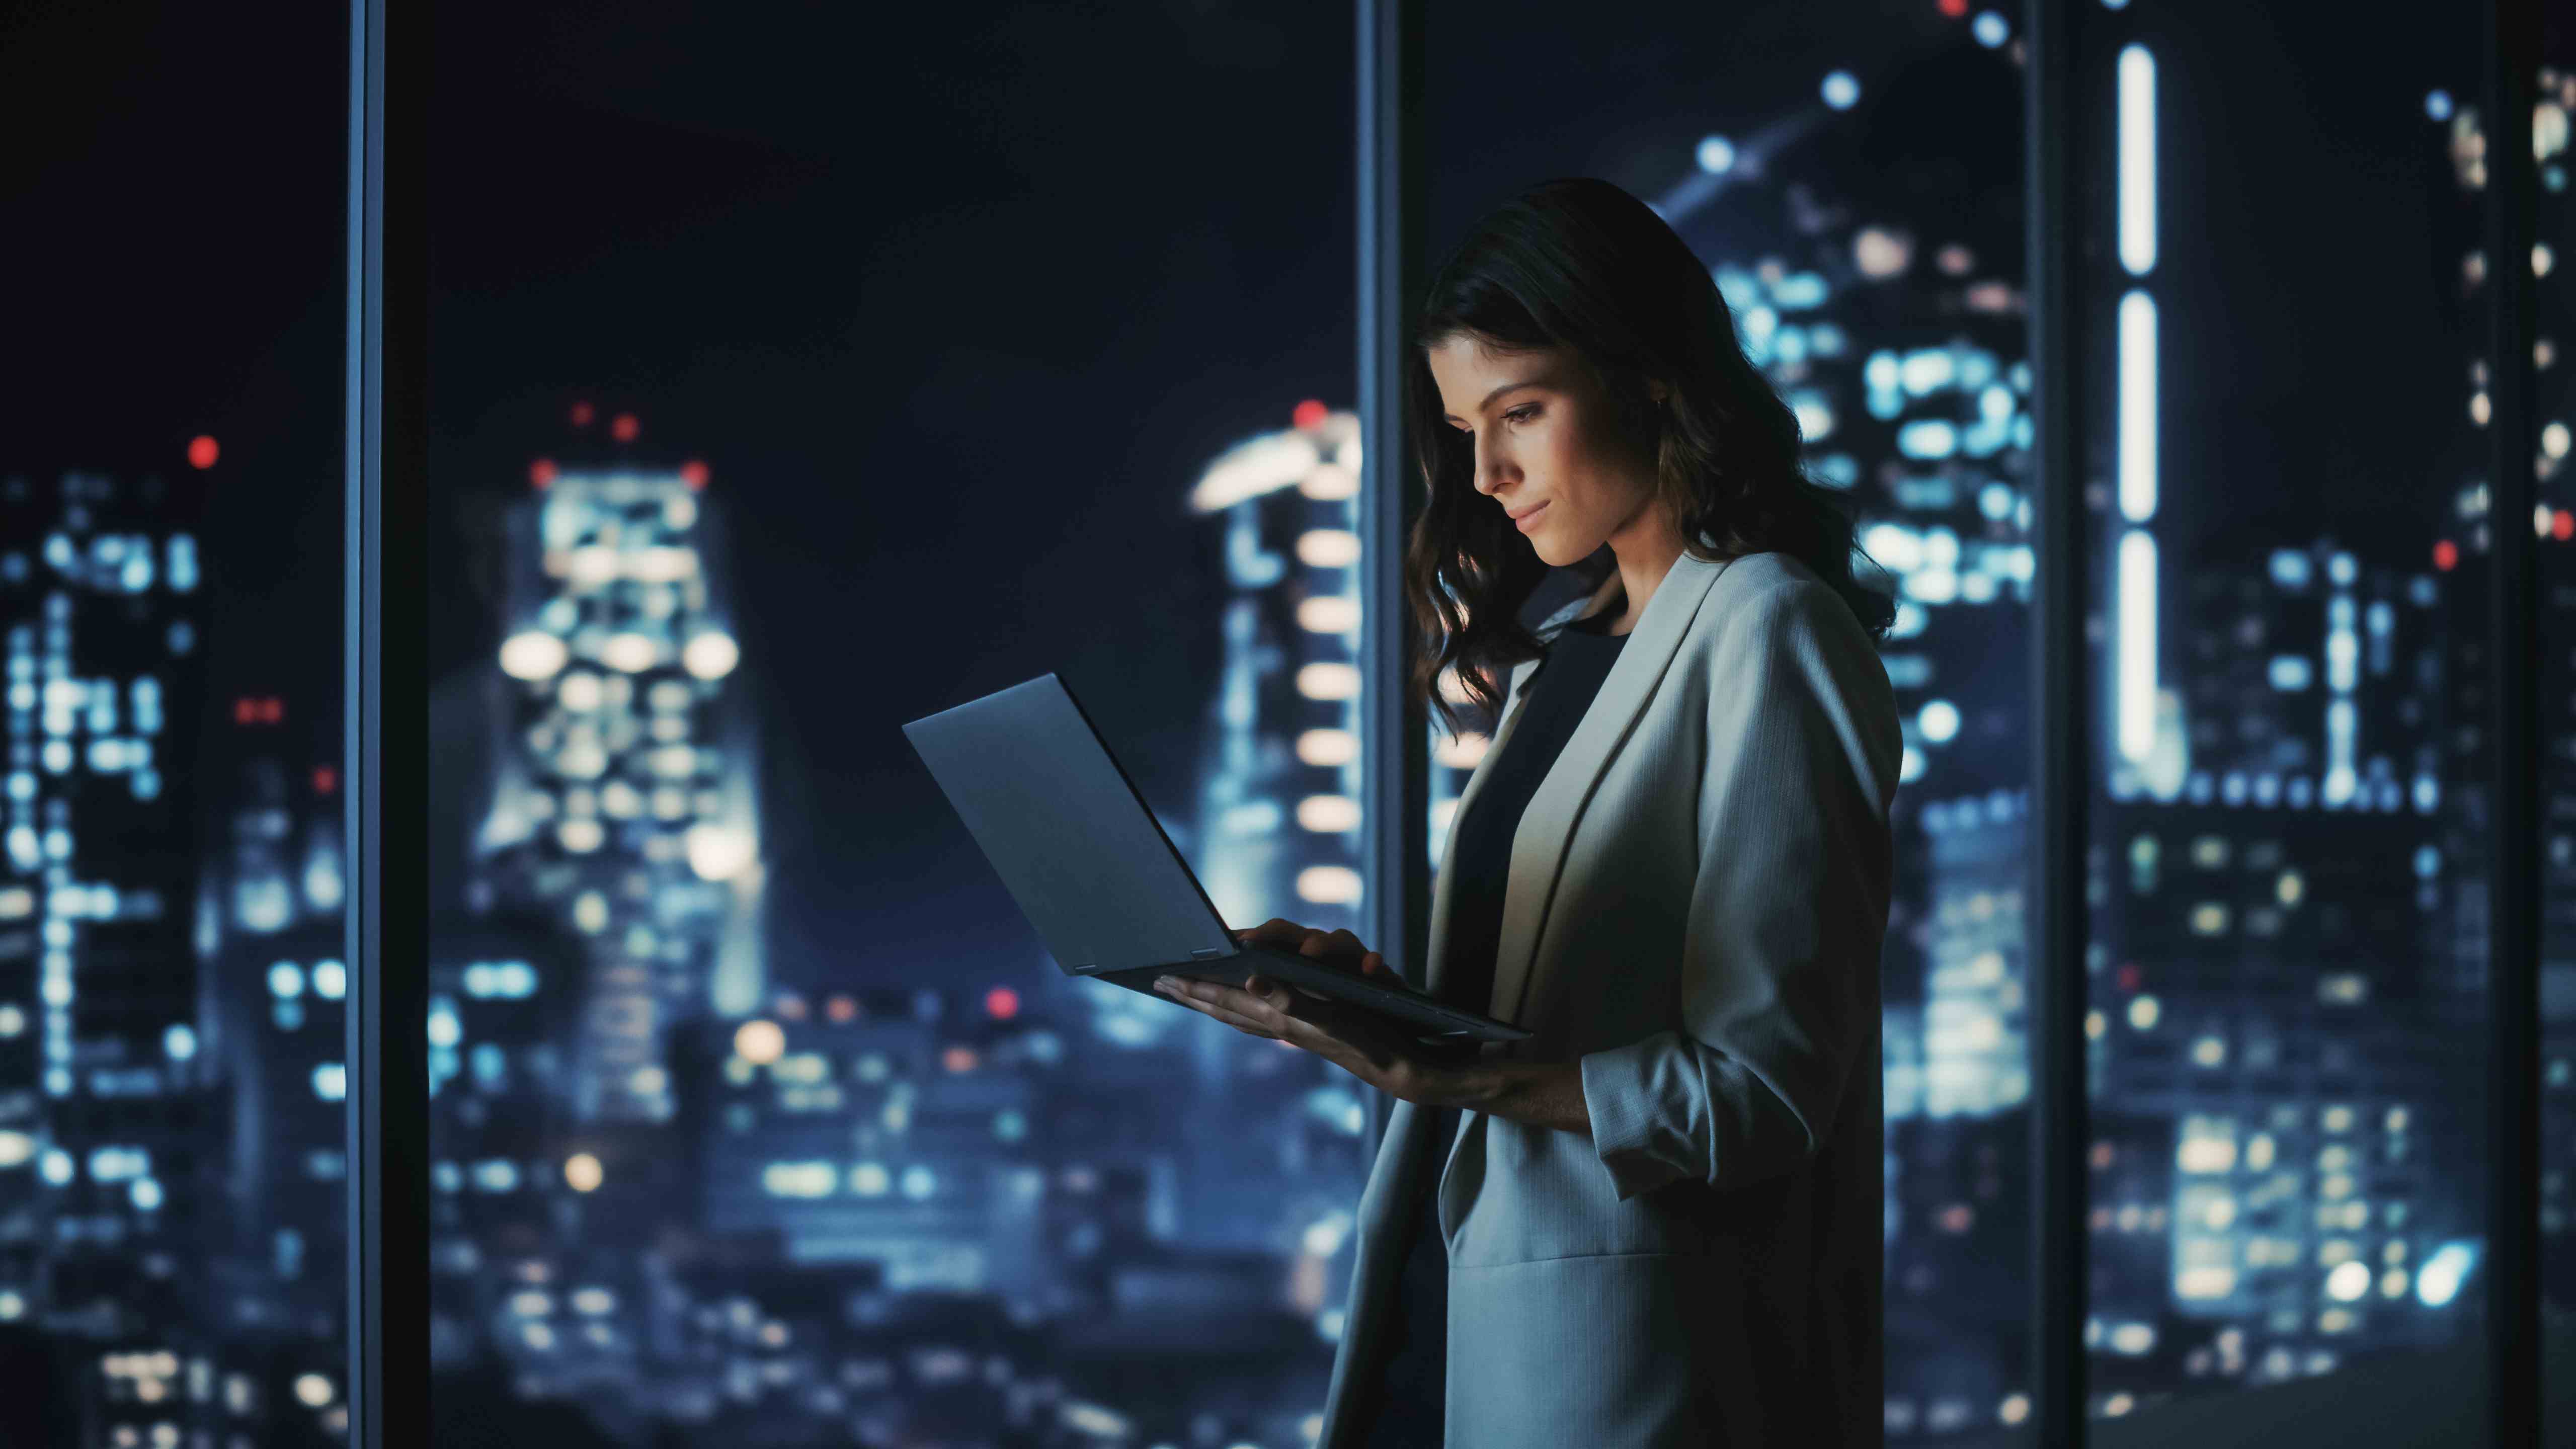 Gece vakti, arka planında şehir manzarası olan bir odada duran kadın, elinde bir dizüstü bilgisayar tutuyor ve tek eliyle kullanıyor.